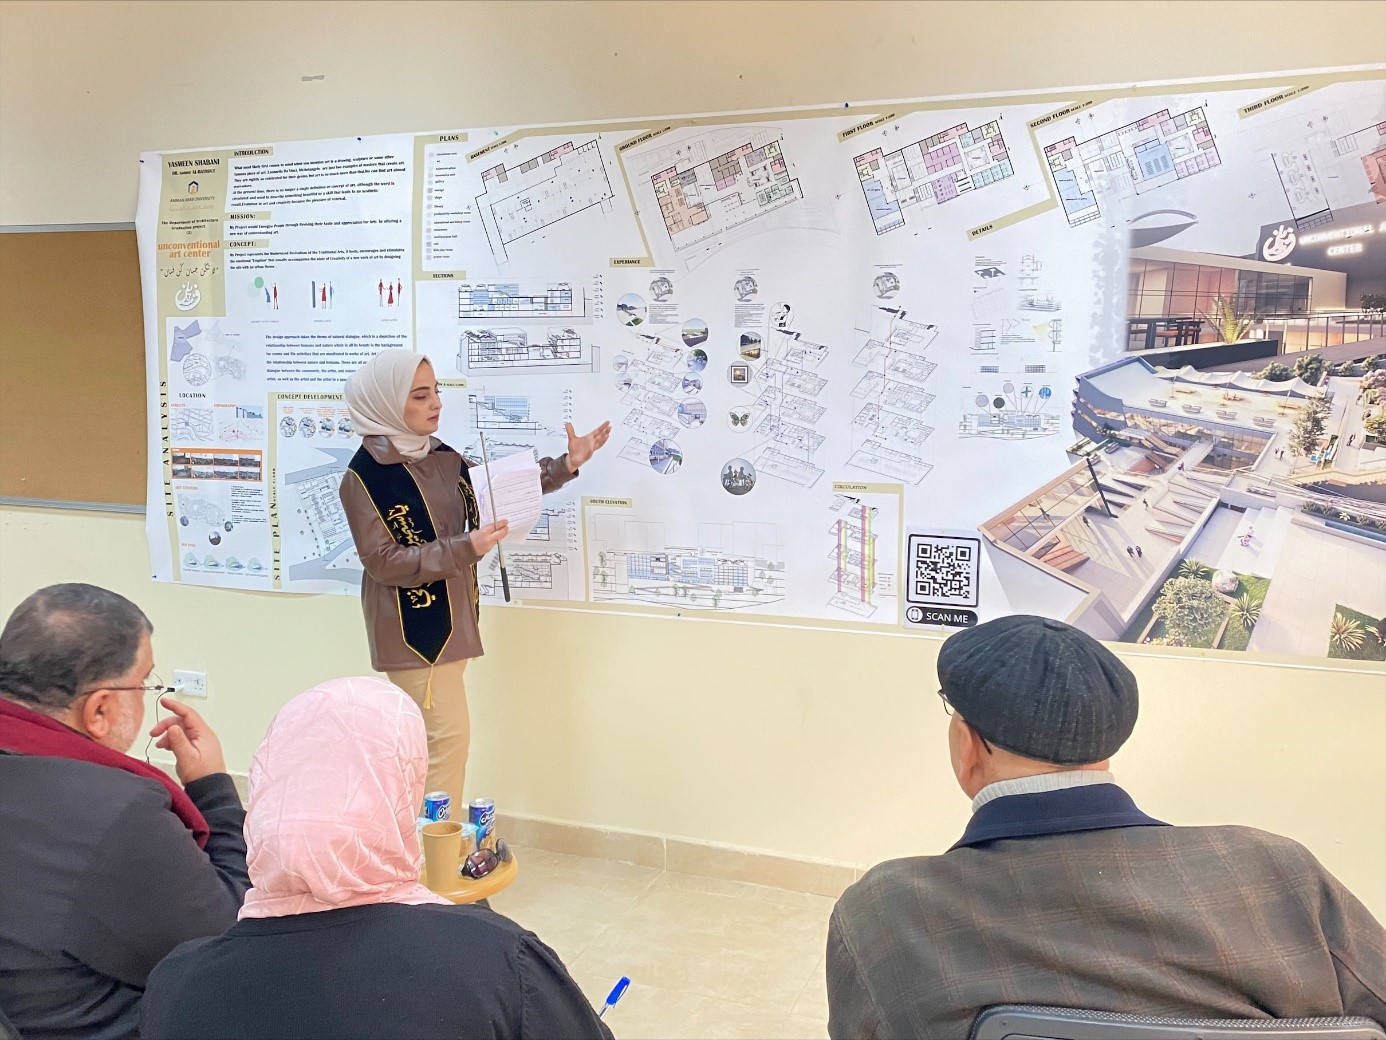 مشاريع تخرج تخدم المجتمع المحلي لطلبة هندسة " عمّان العربية "2